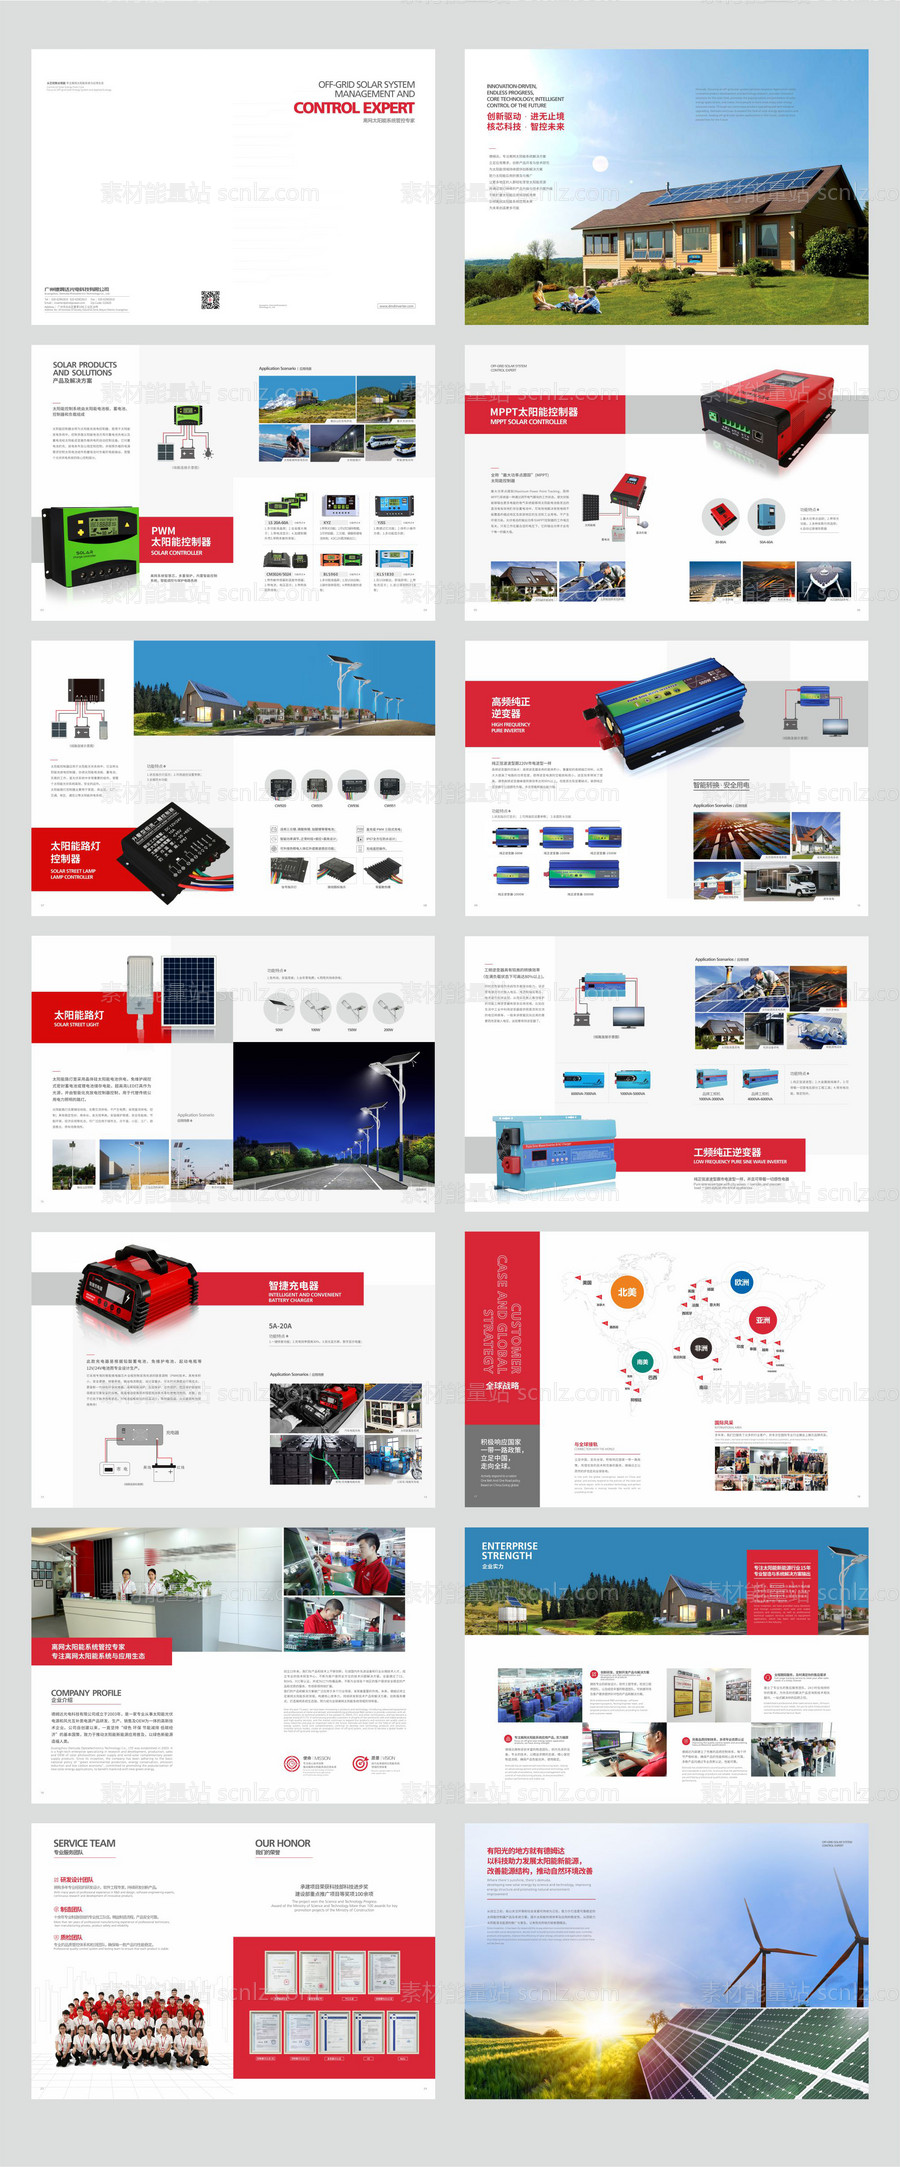 素材能量站-太阳能系统产品画册(中文版)